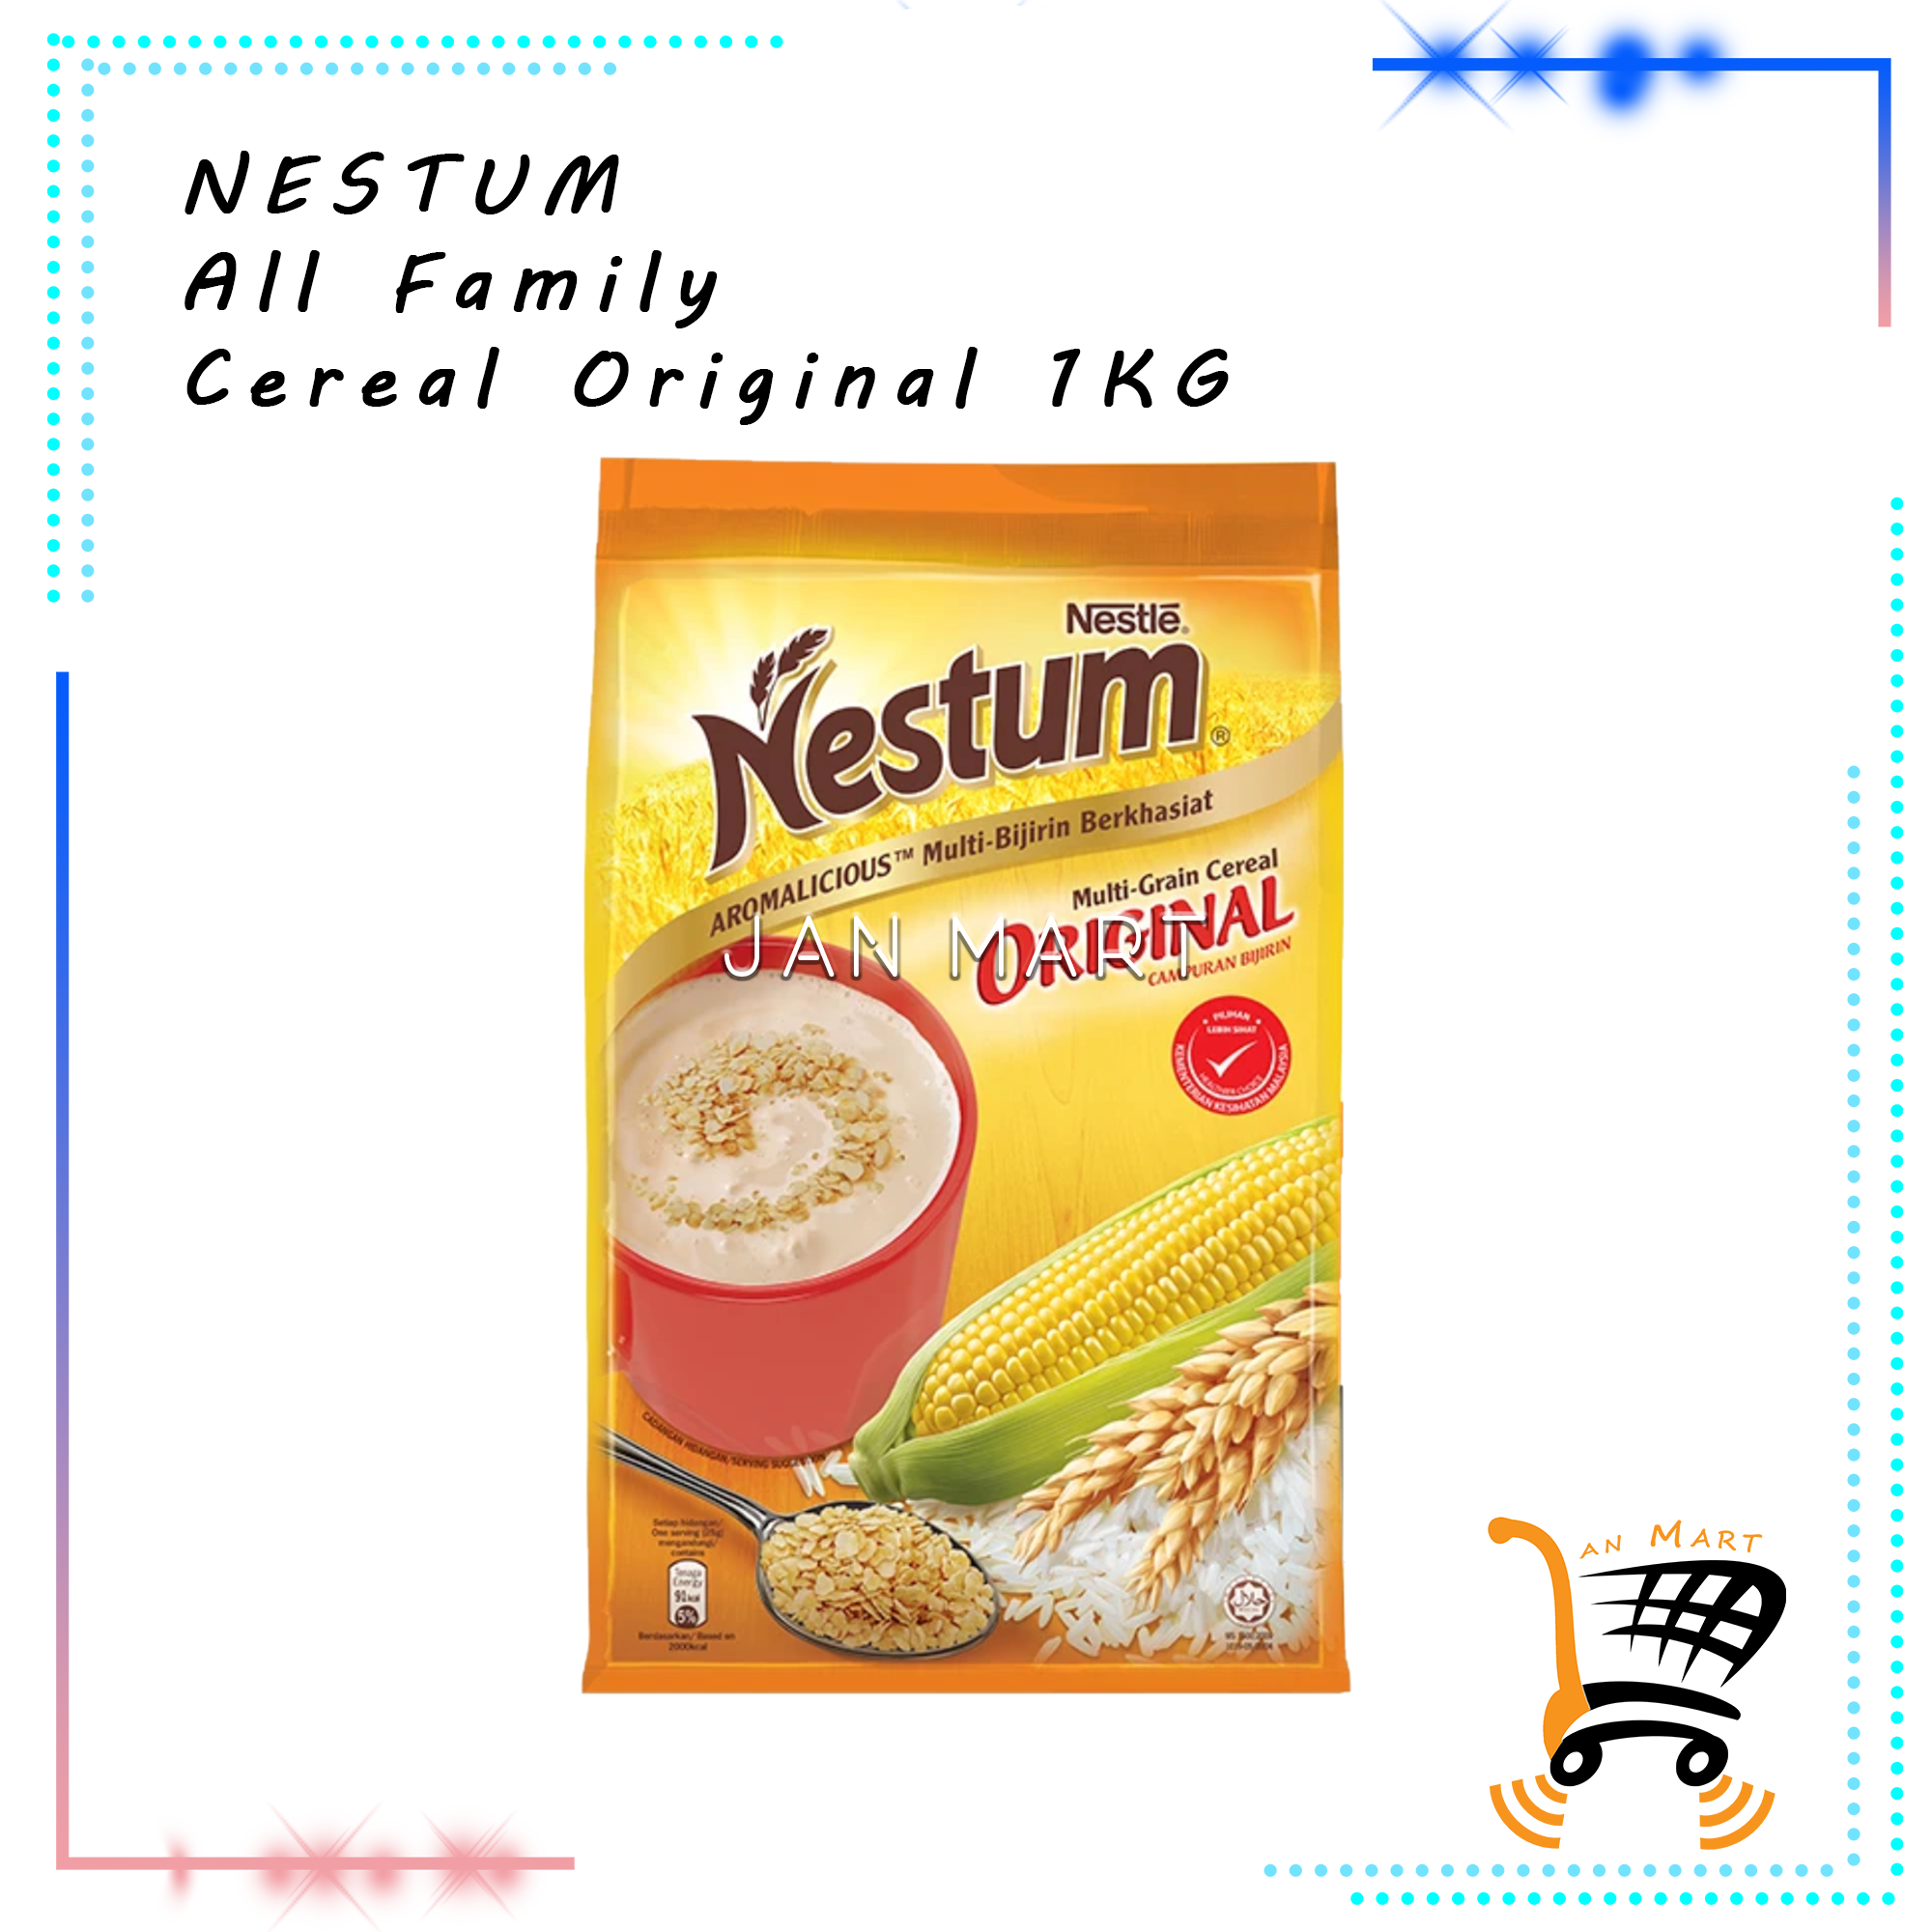 NESTLE Nestum All Family Cereal Original 1KG